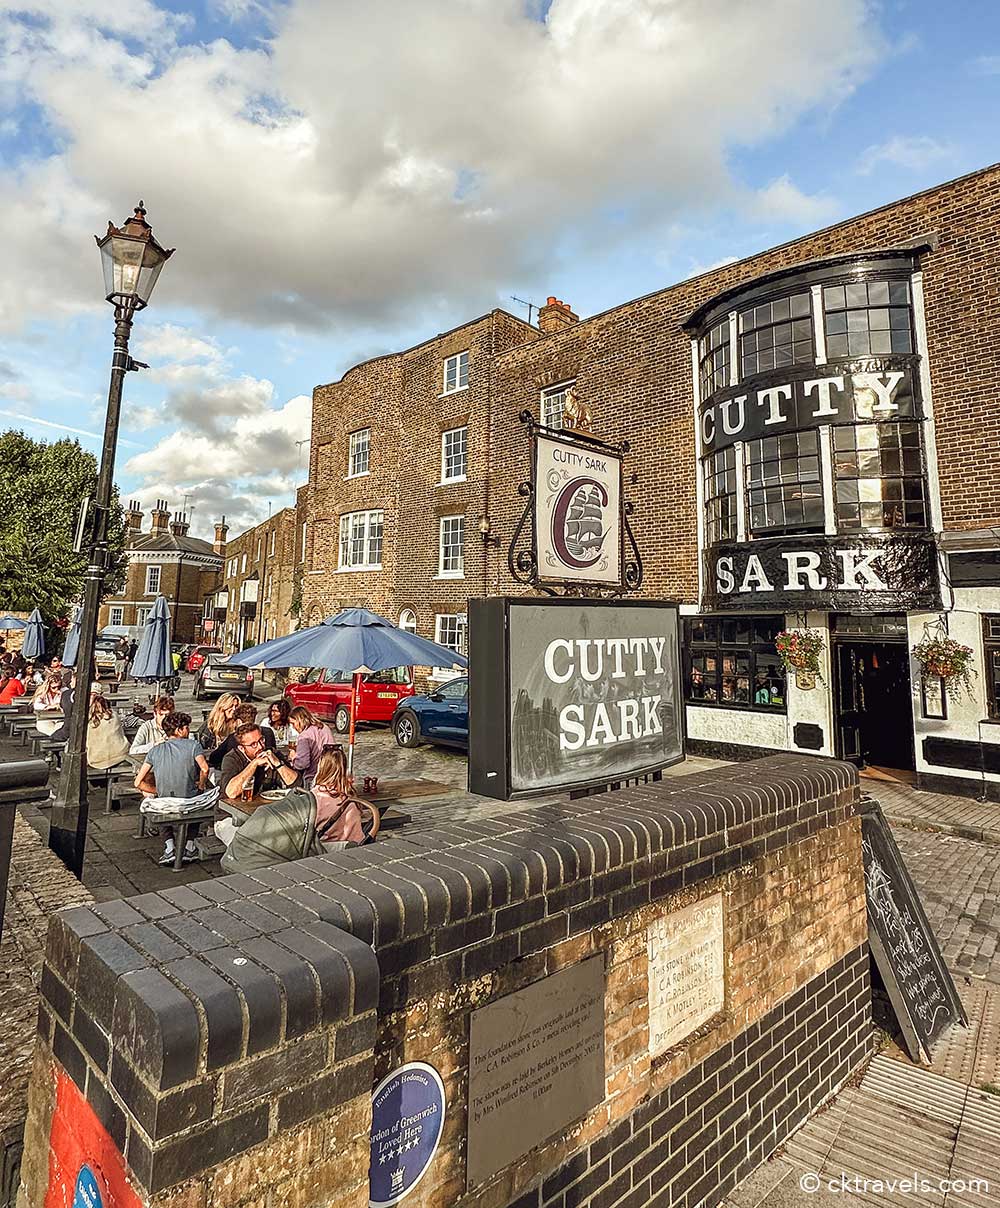 Cutty Sark pub beer garden in Greenwich London